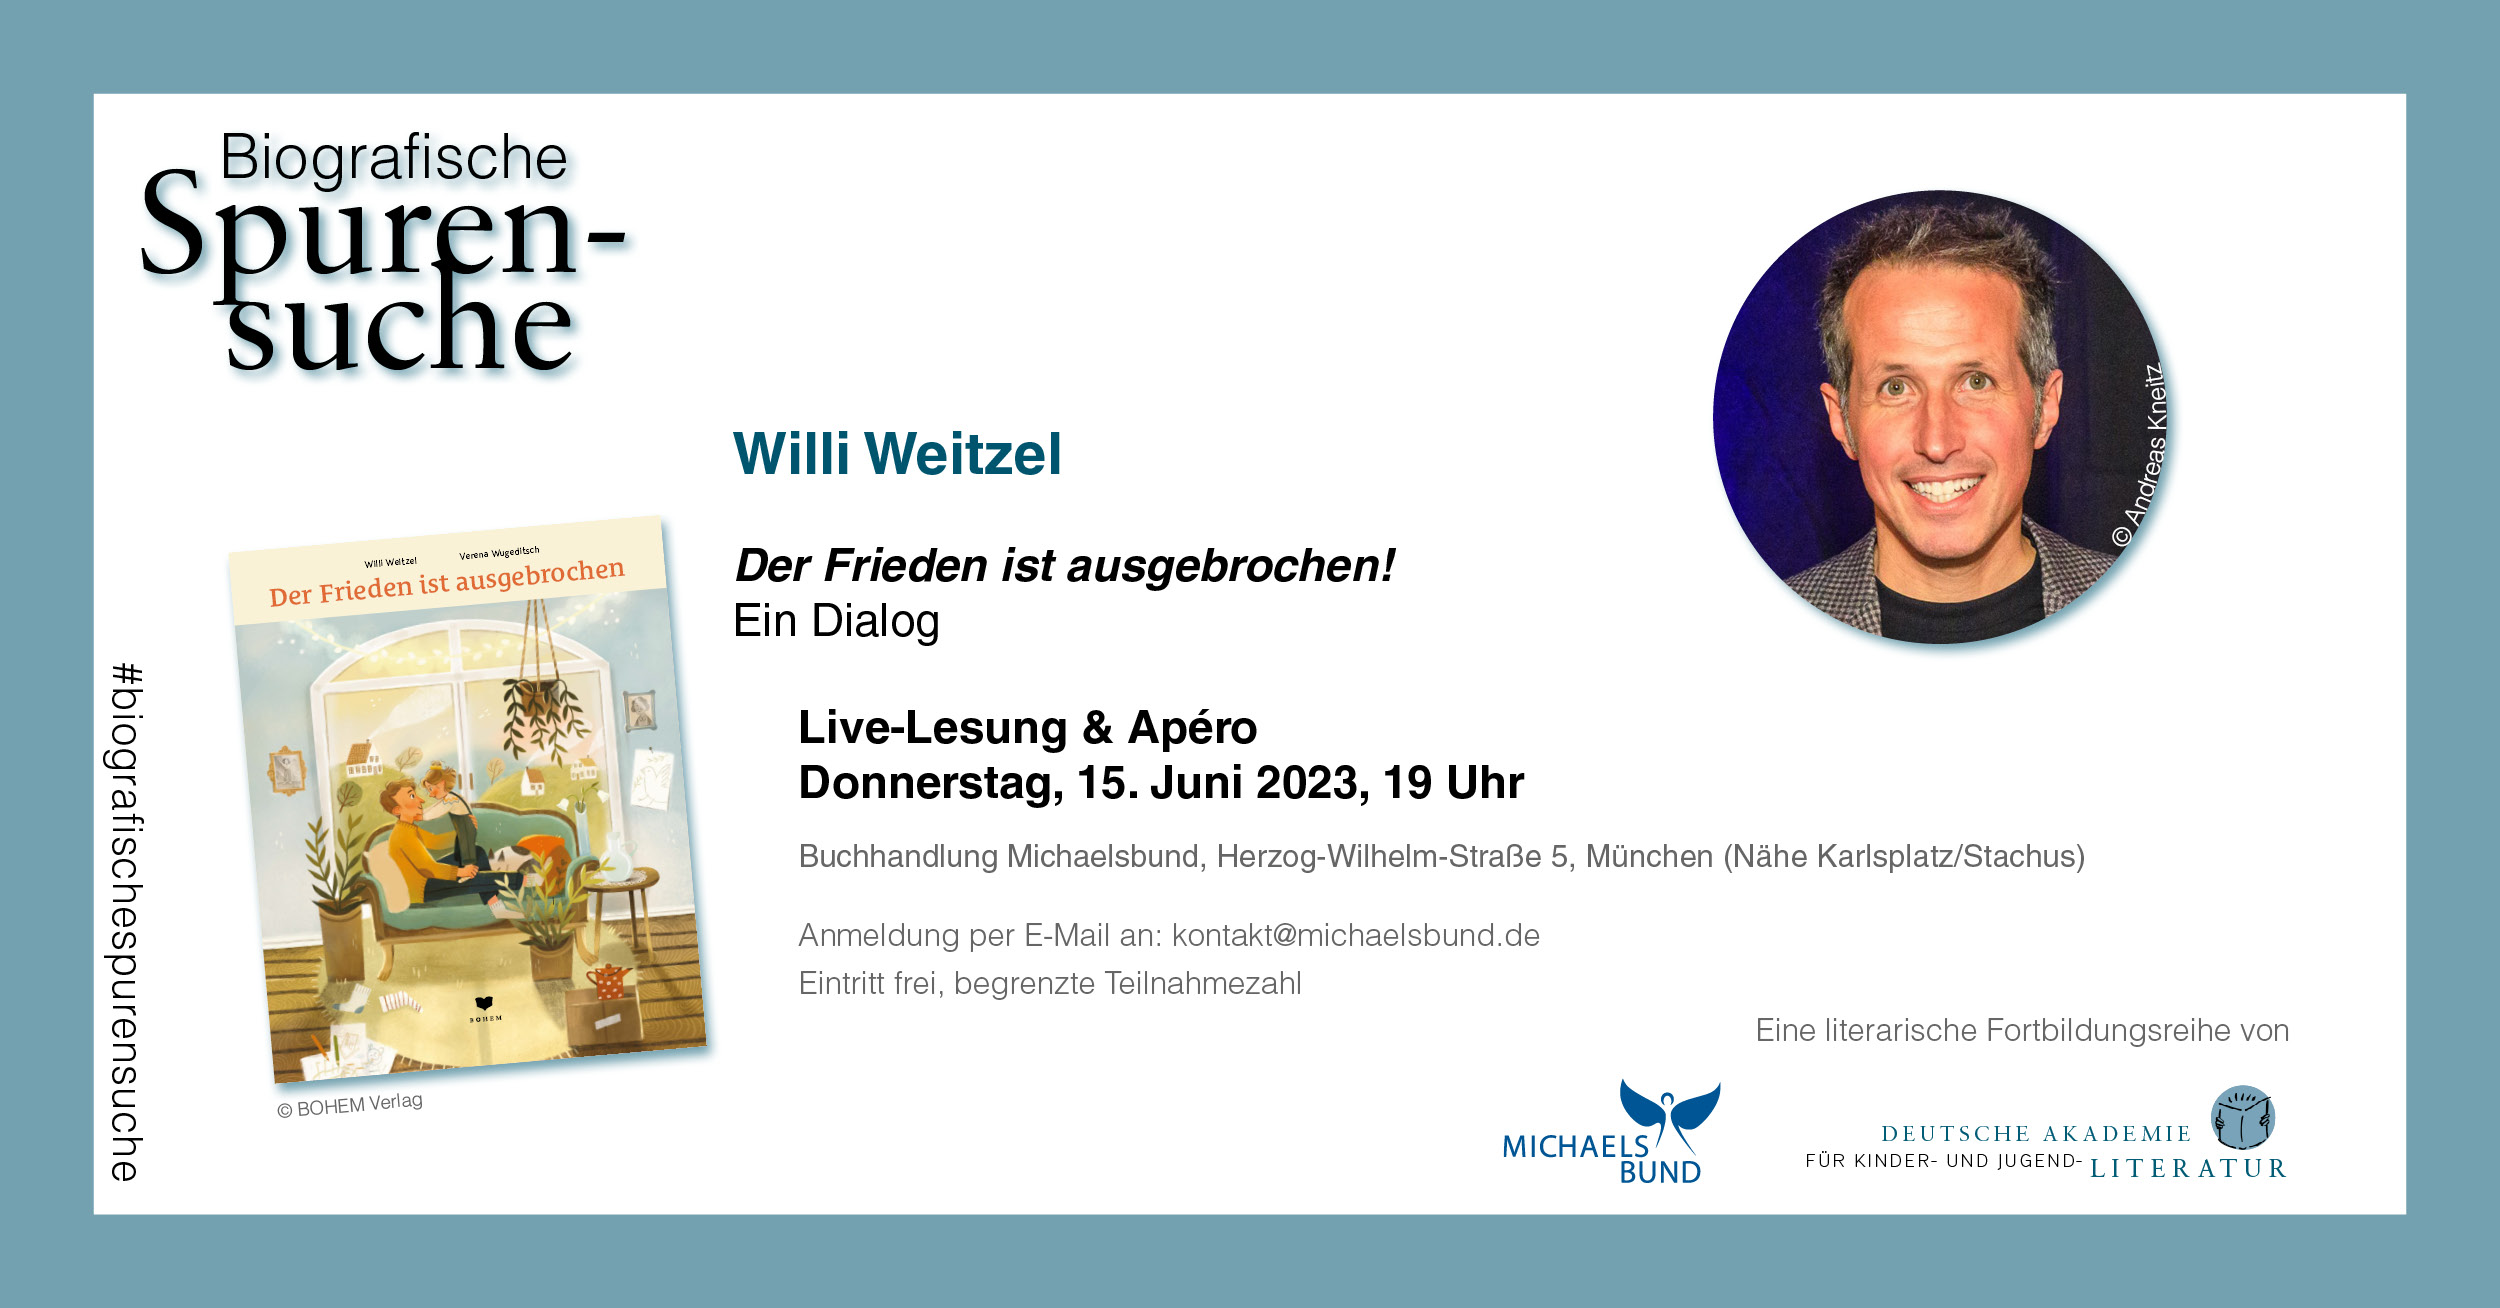 Biografische Spurensuche: "Der Frieden ist ausgebrochen!" | Live-Lesung & Apéro mit Willi Weitzel (15.06.2023)